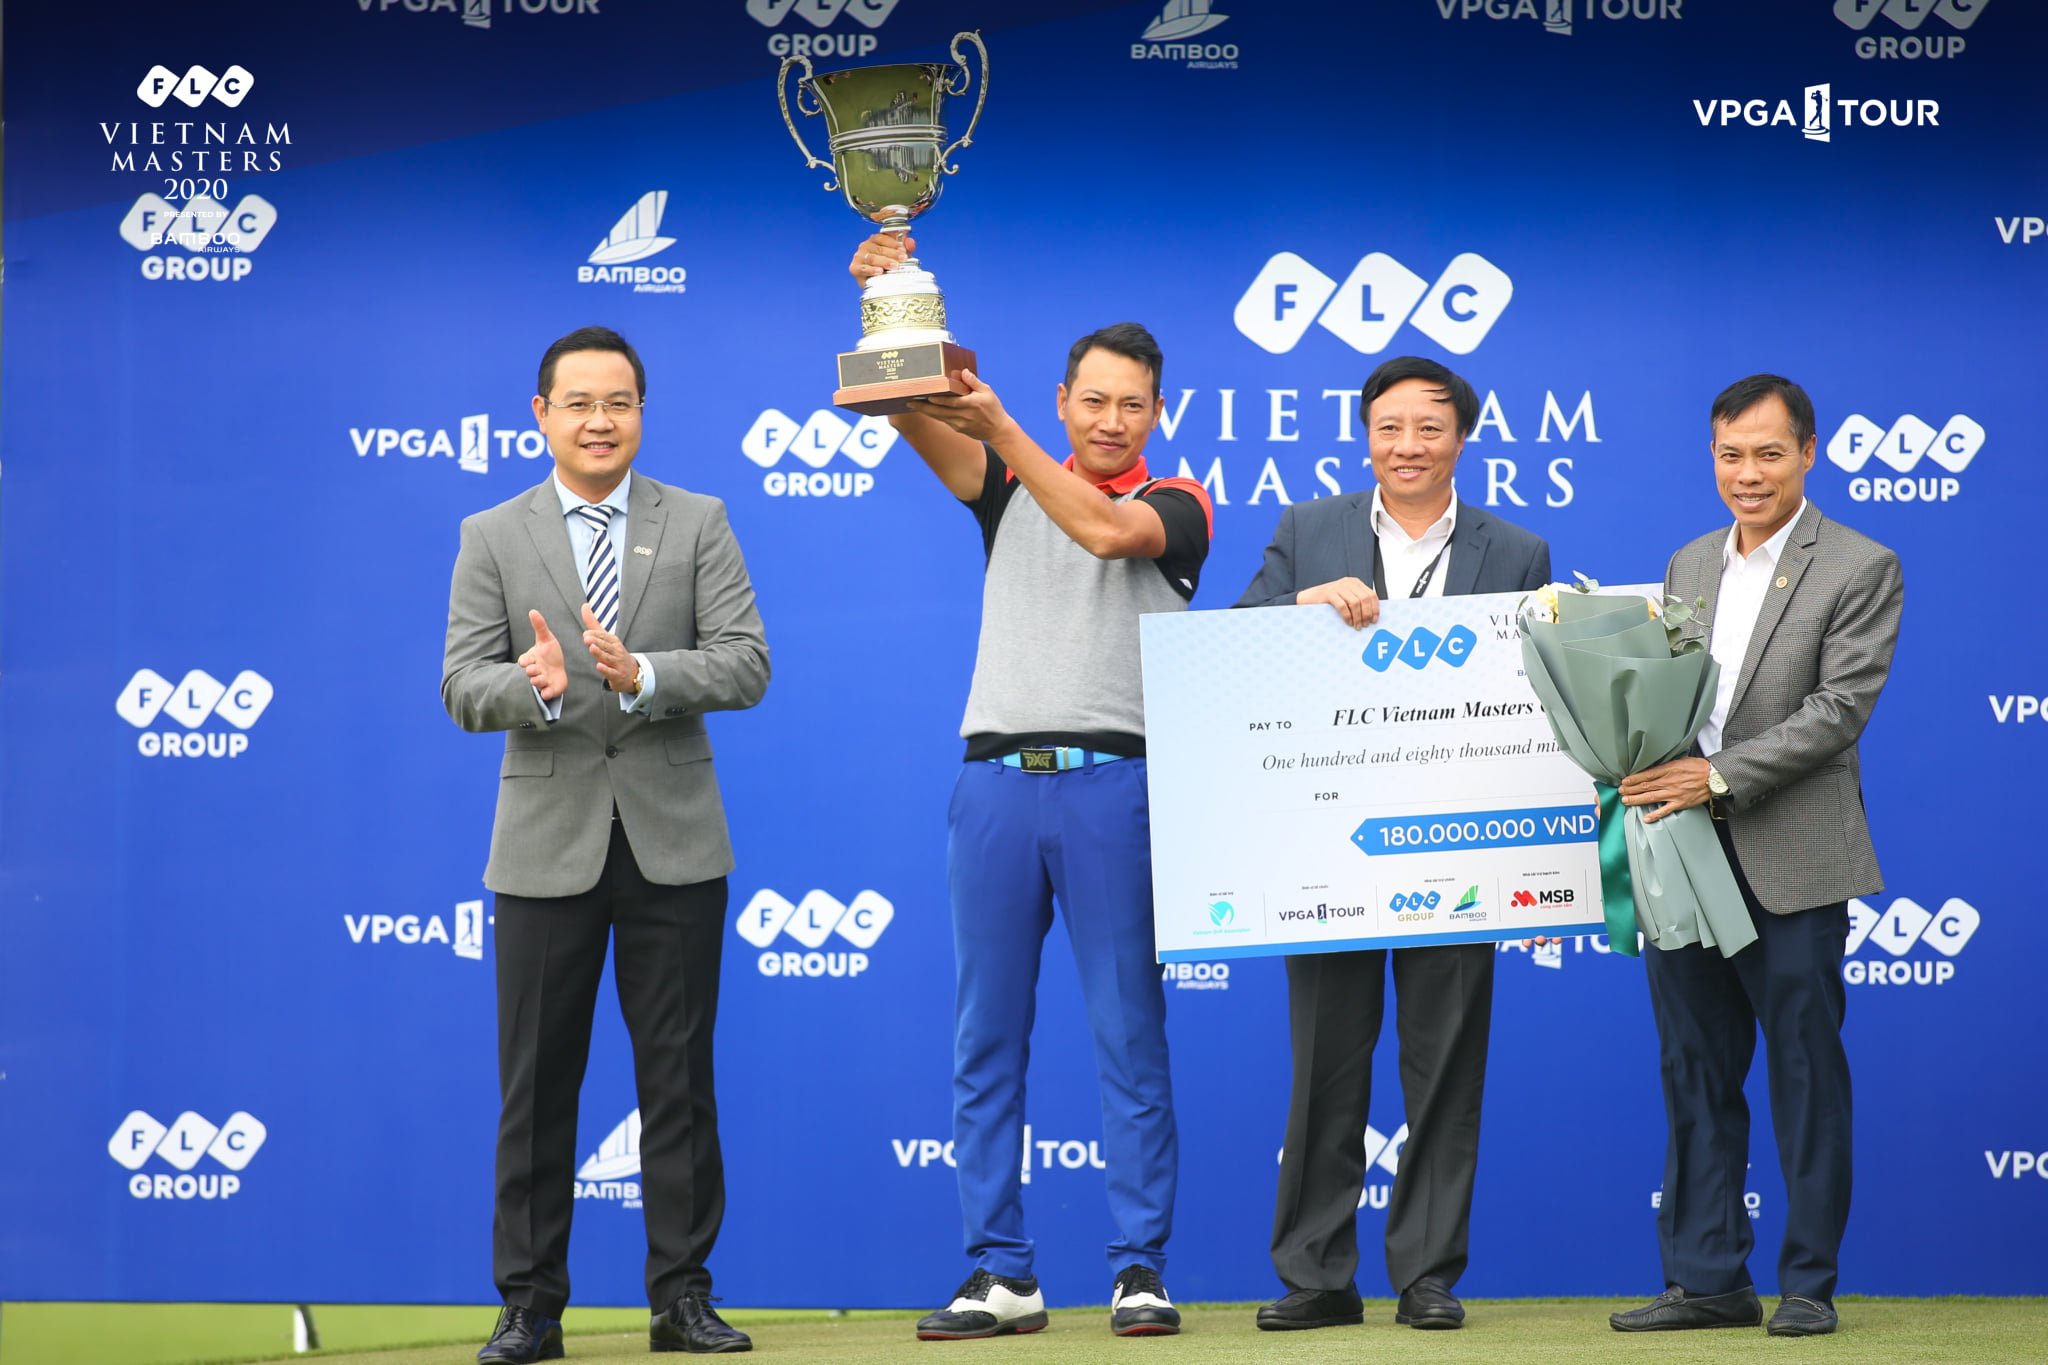 Đỗ Hồng Giang vô địch FLC Vietnam Masters 2020 Presented by Bamboo Airways